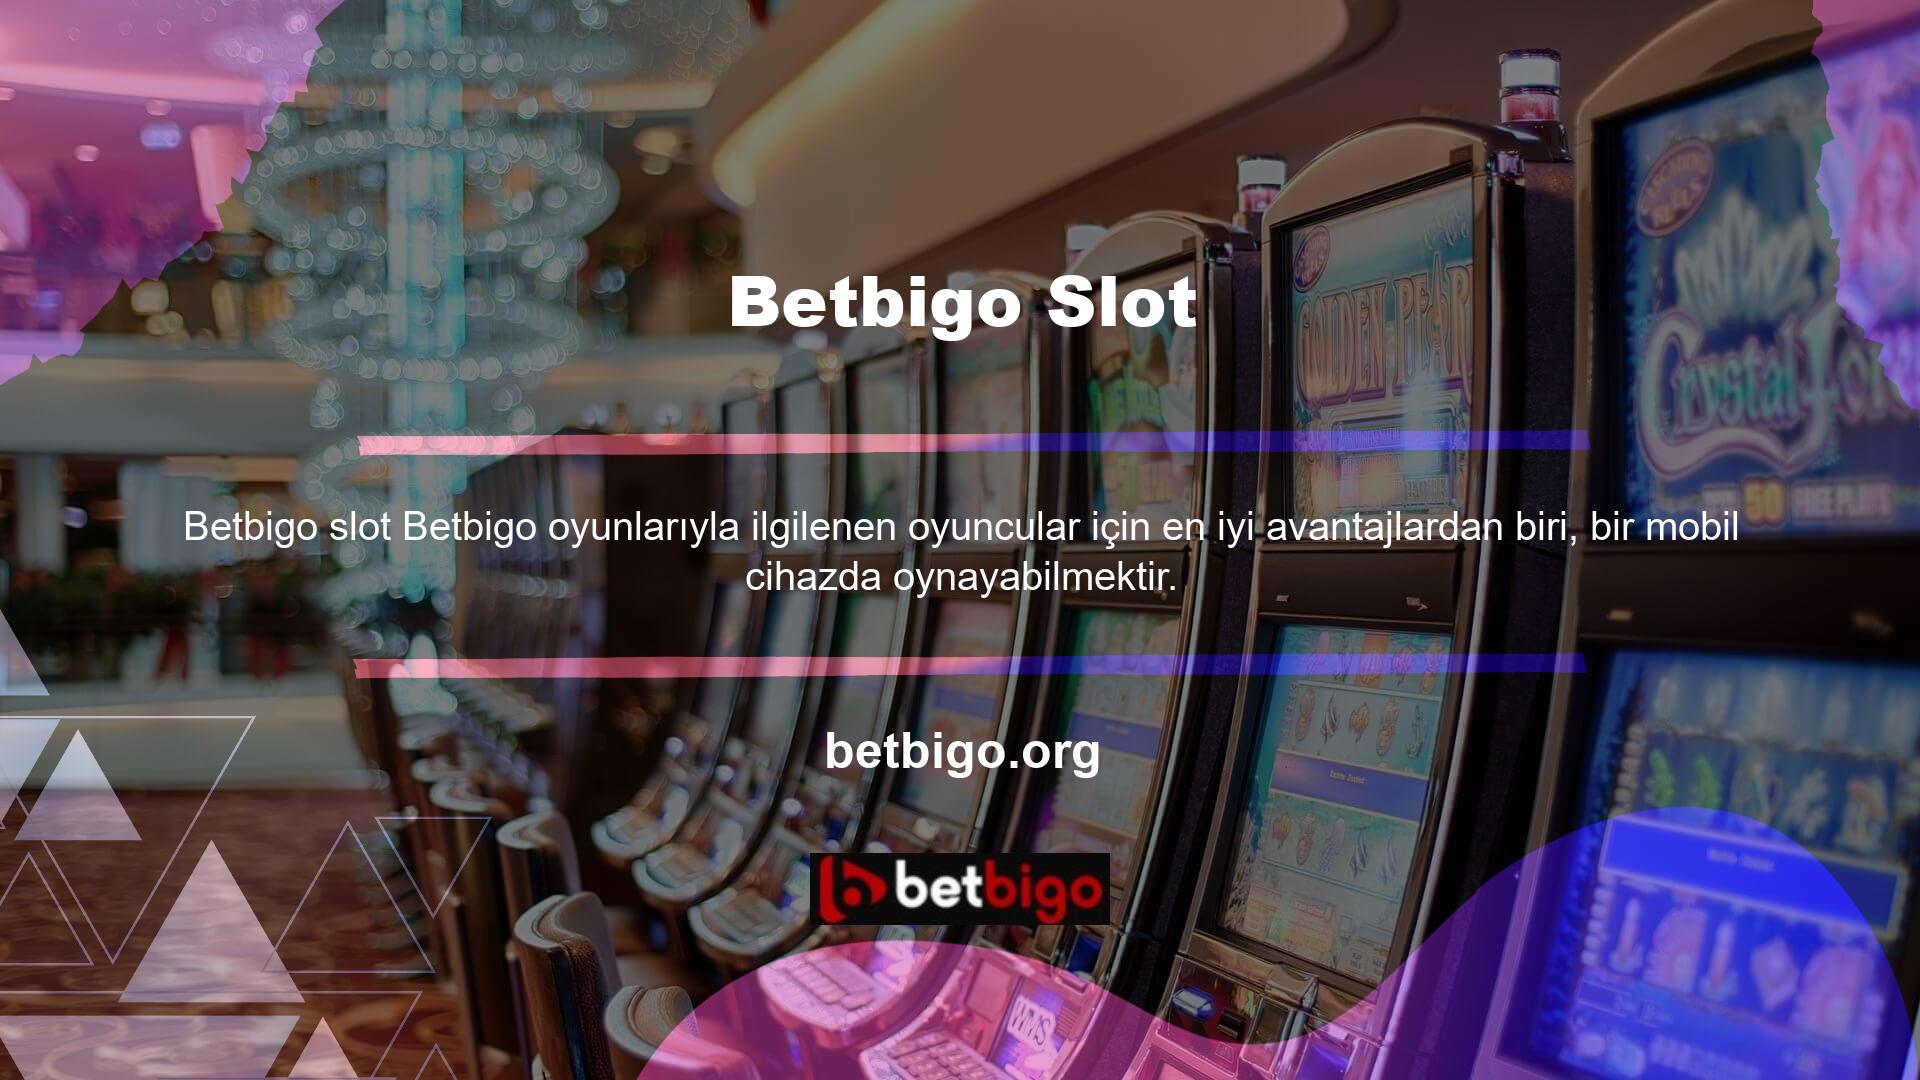 Casino oyunları en rahat şekilde normal bir bilgisayarda oynanabileceği gibi mobil cihazlarda da çok eğlenceli bir şekilde oynanabilmektedir